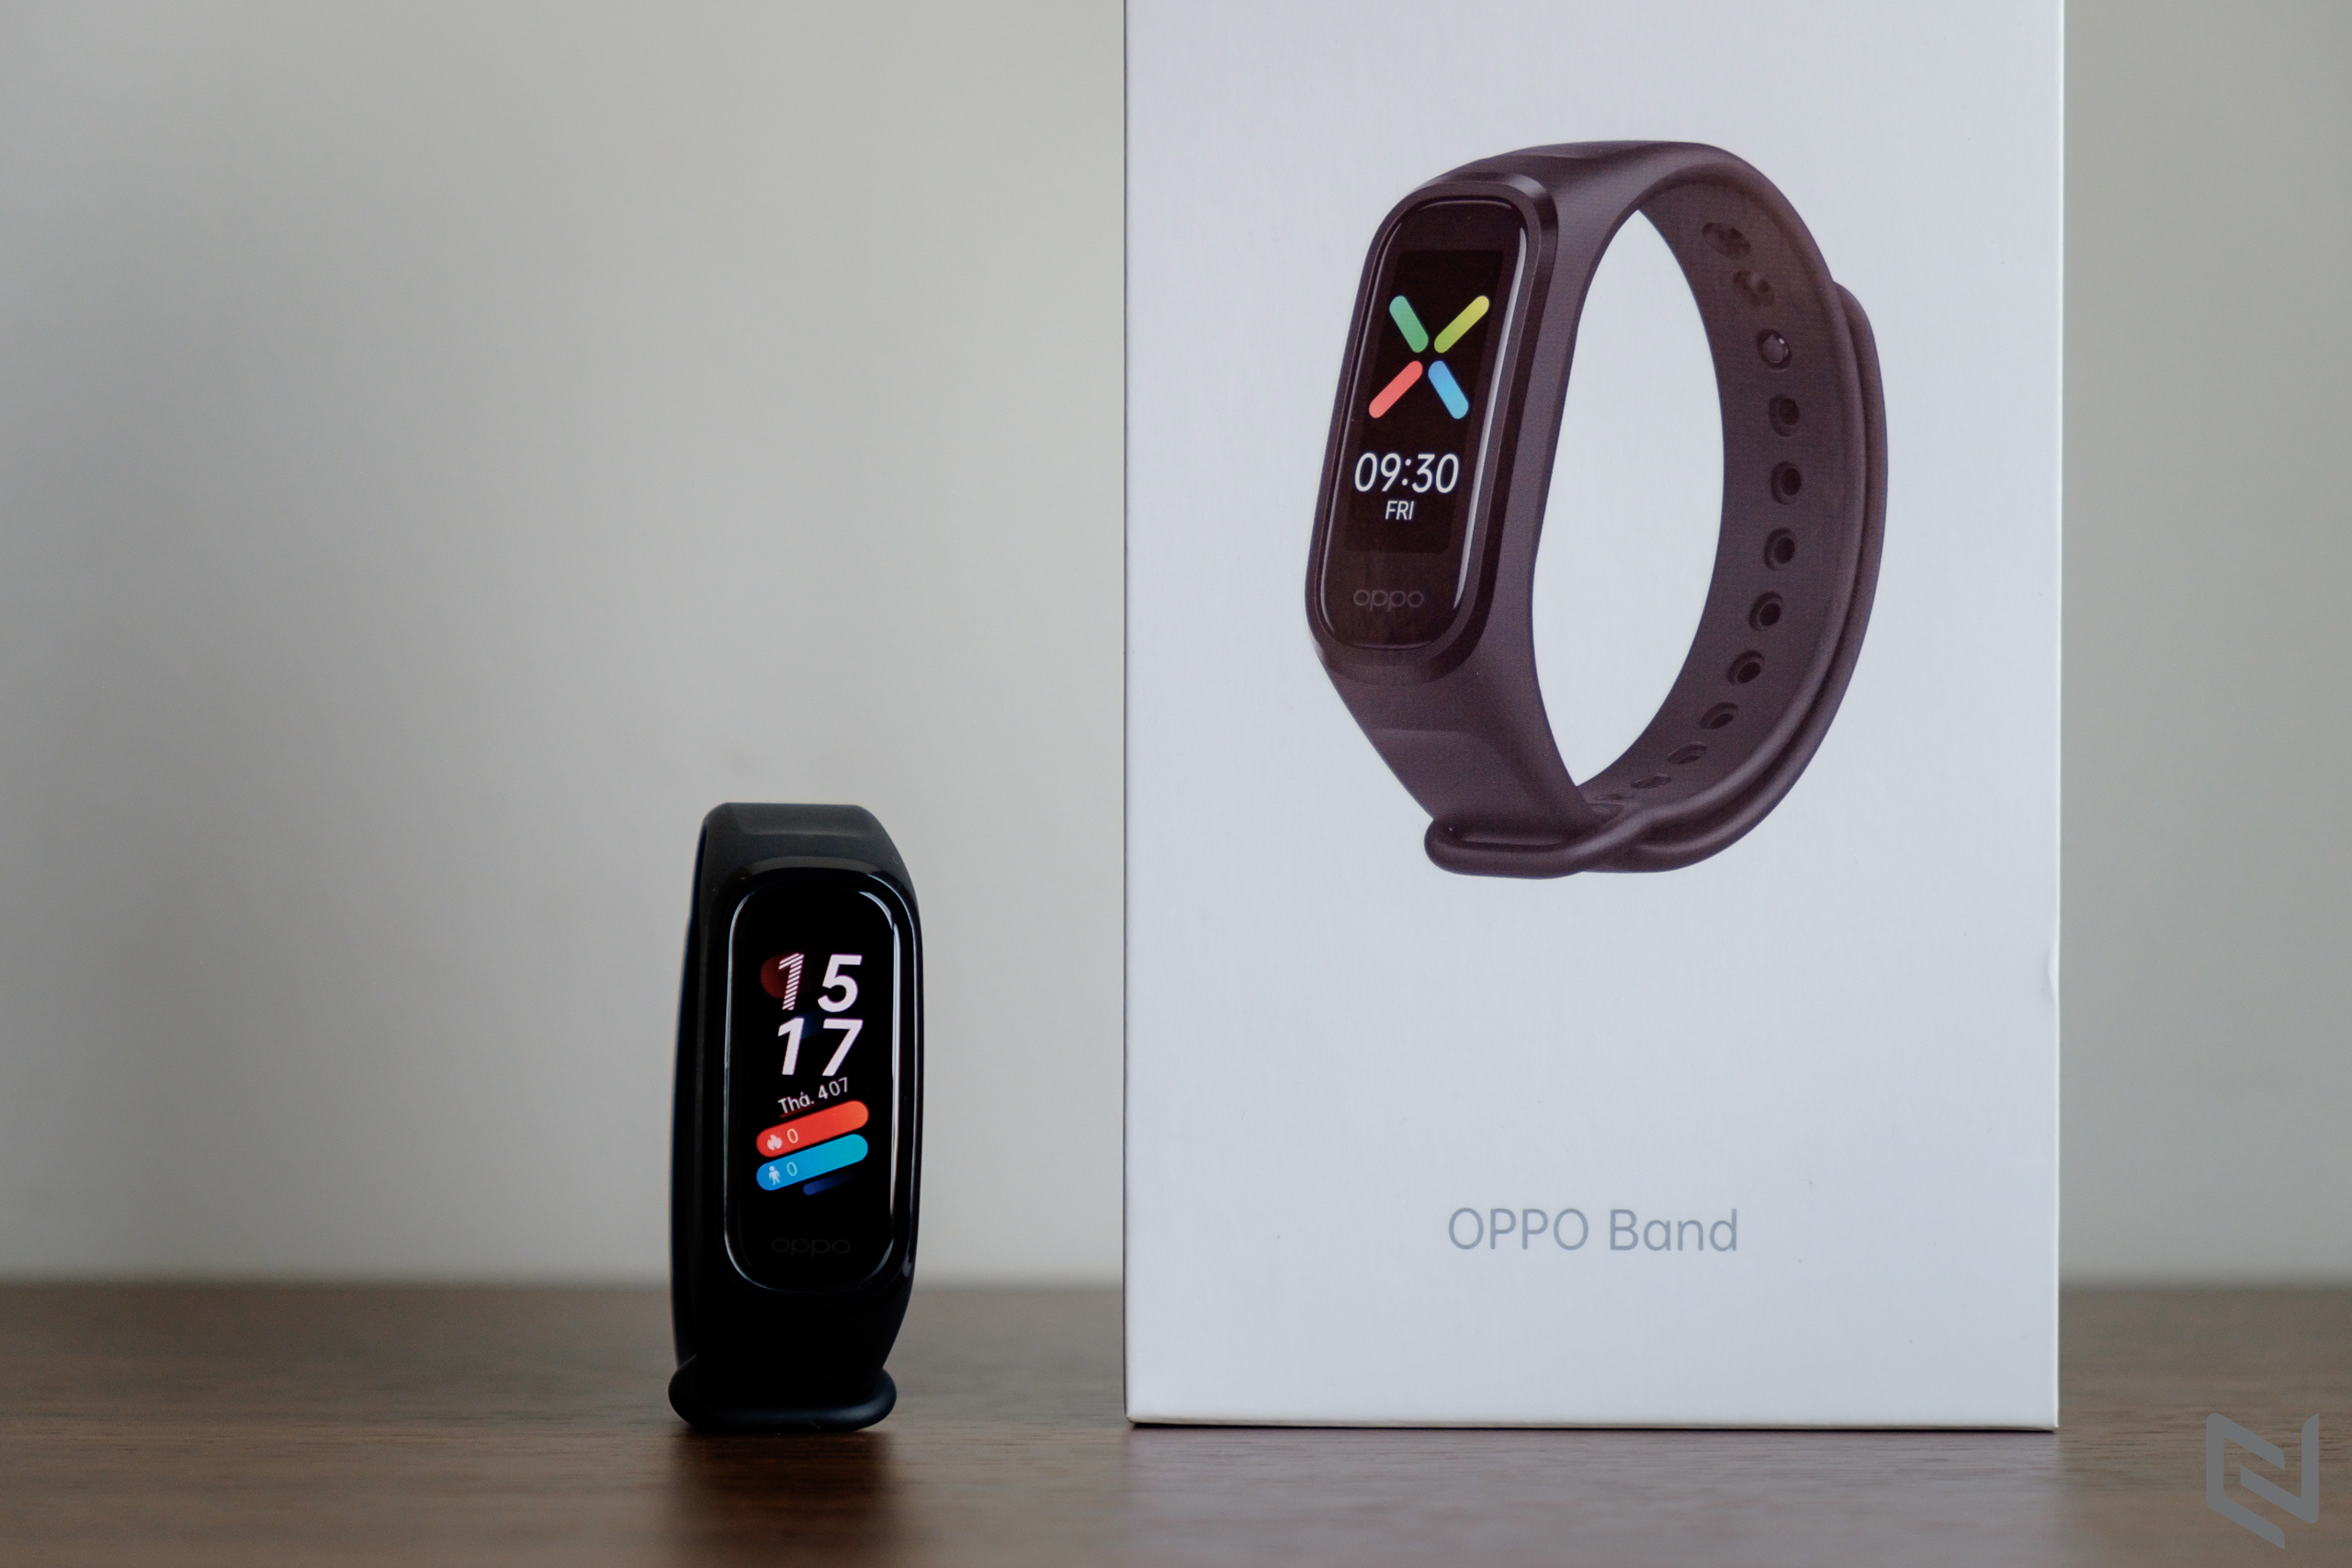 Mở hộp và trải nghiệm OPPO Band: Đồng hồ theo dõi sức khỏe thông minh với cảm biến SpO2